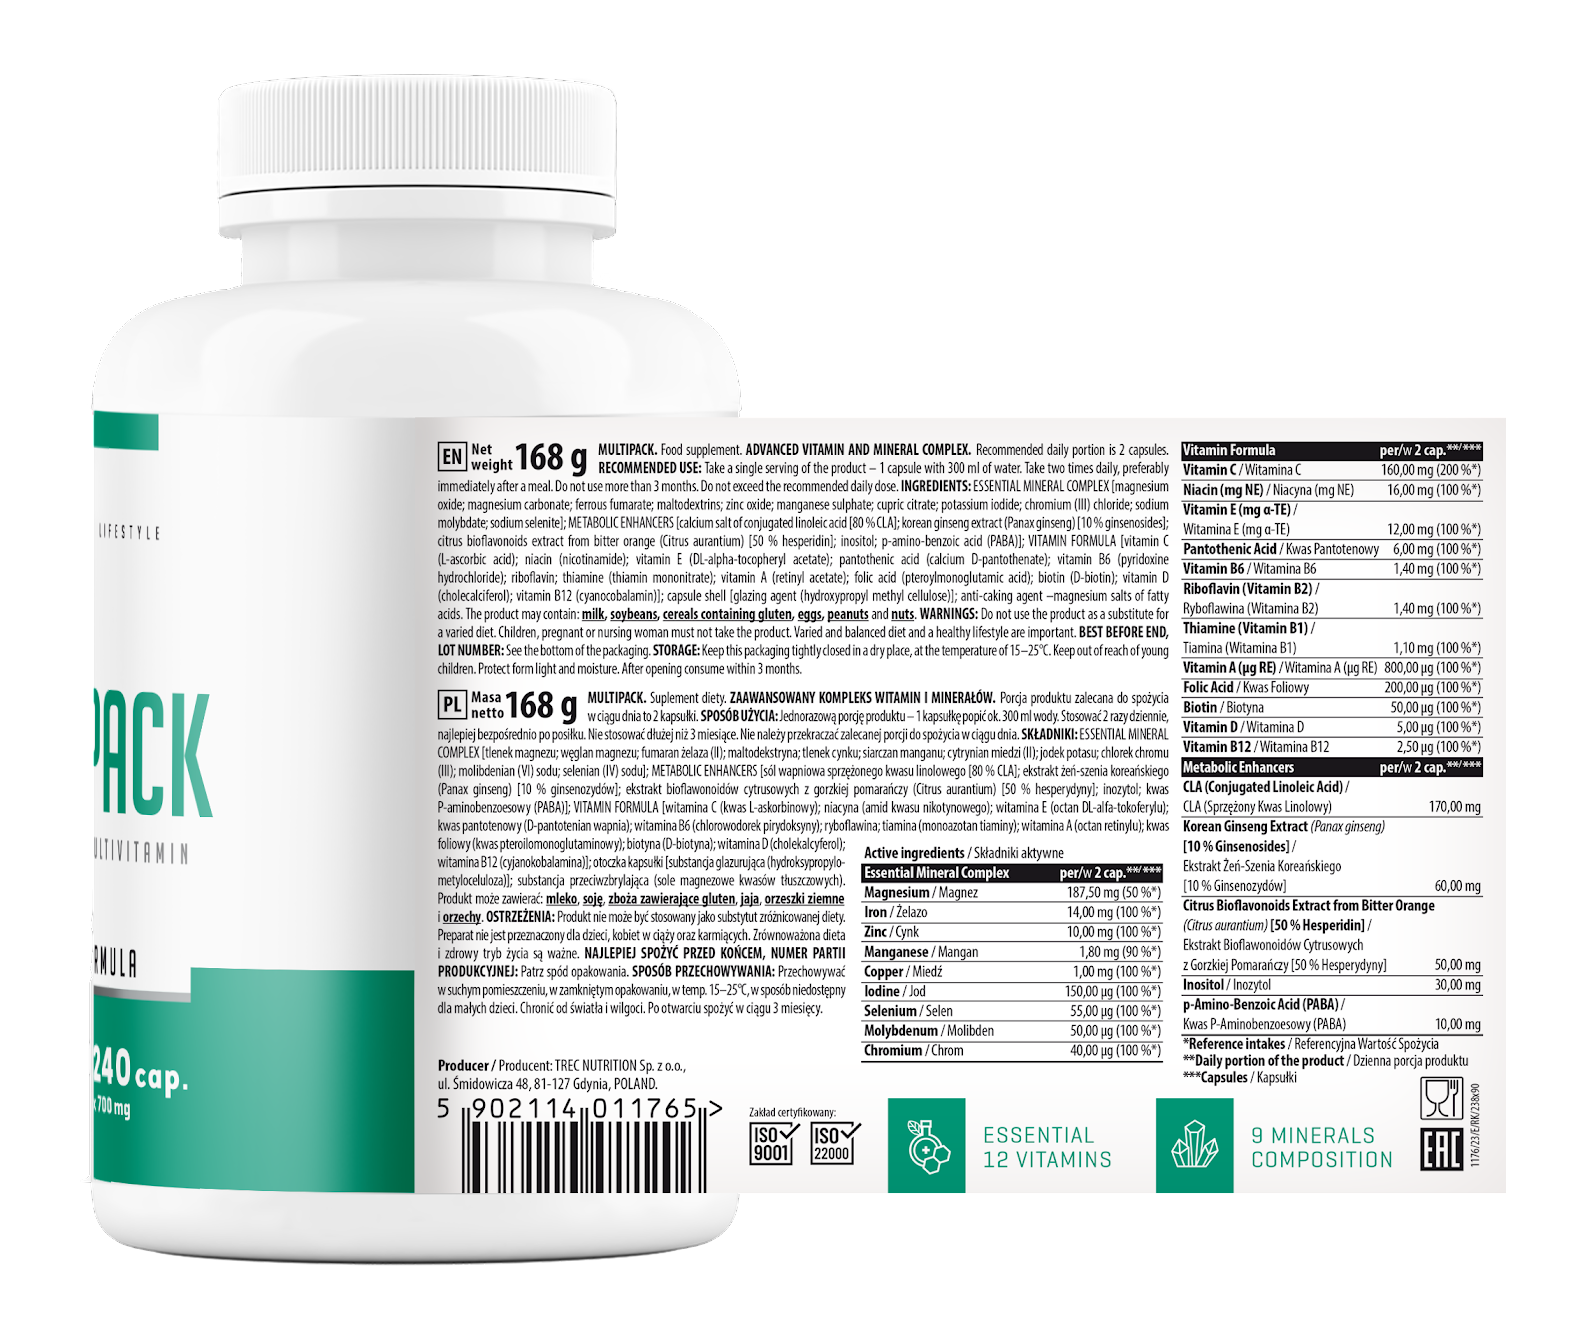 Trec Nutrition Multiwitamin MULTI PACK – 240  cap